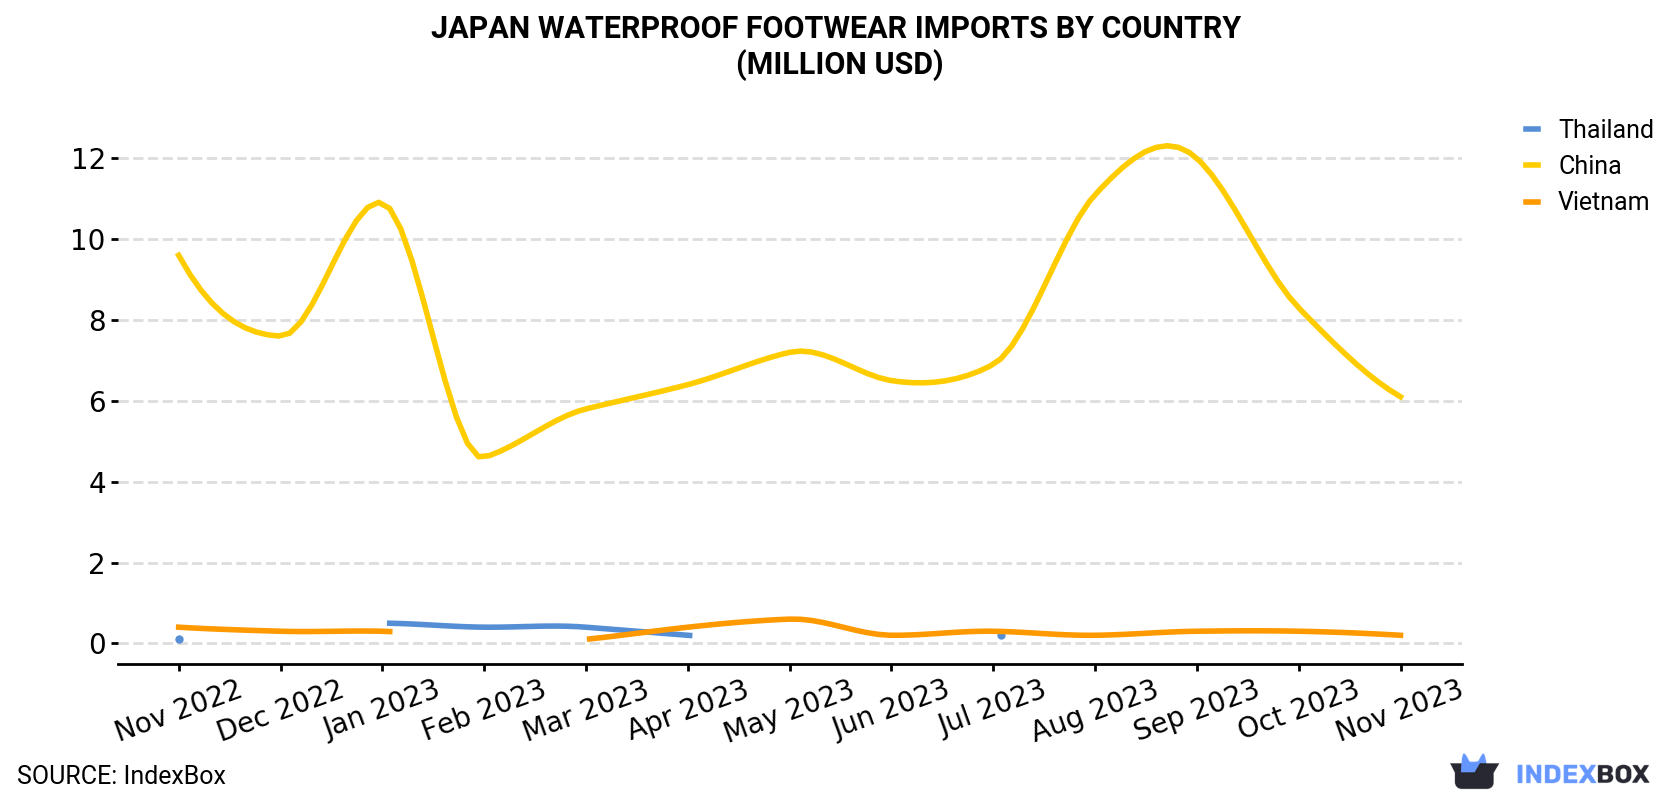 Japan Waterproof Footwear Imports By Country (Million USD)